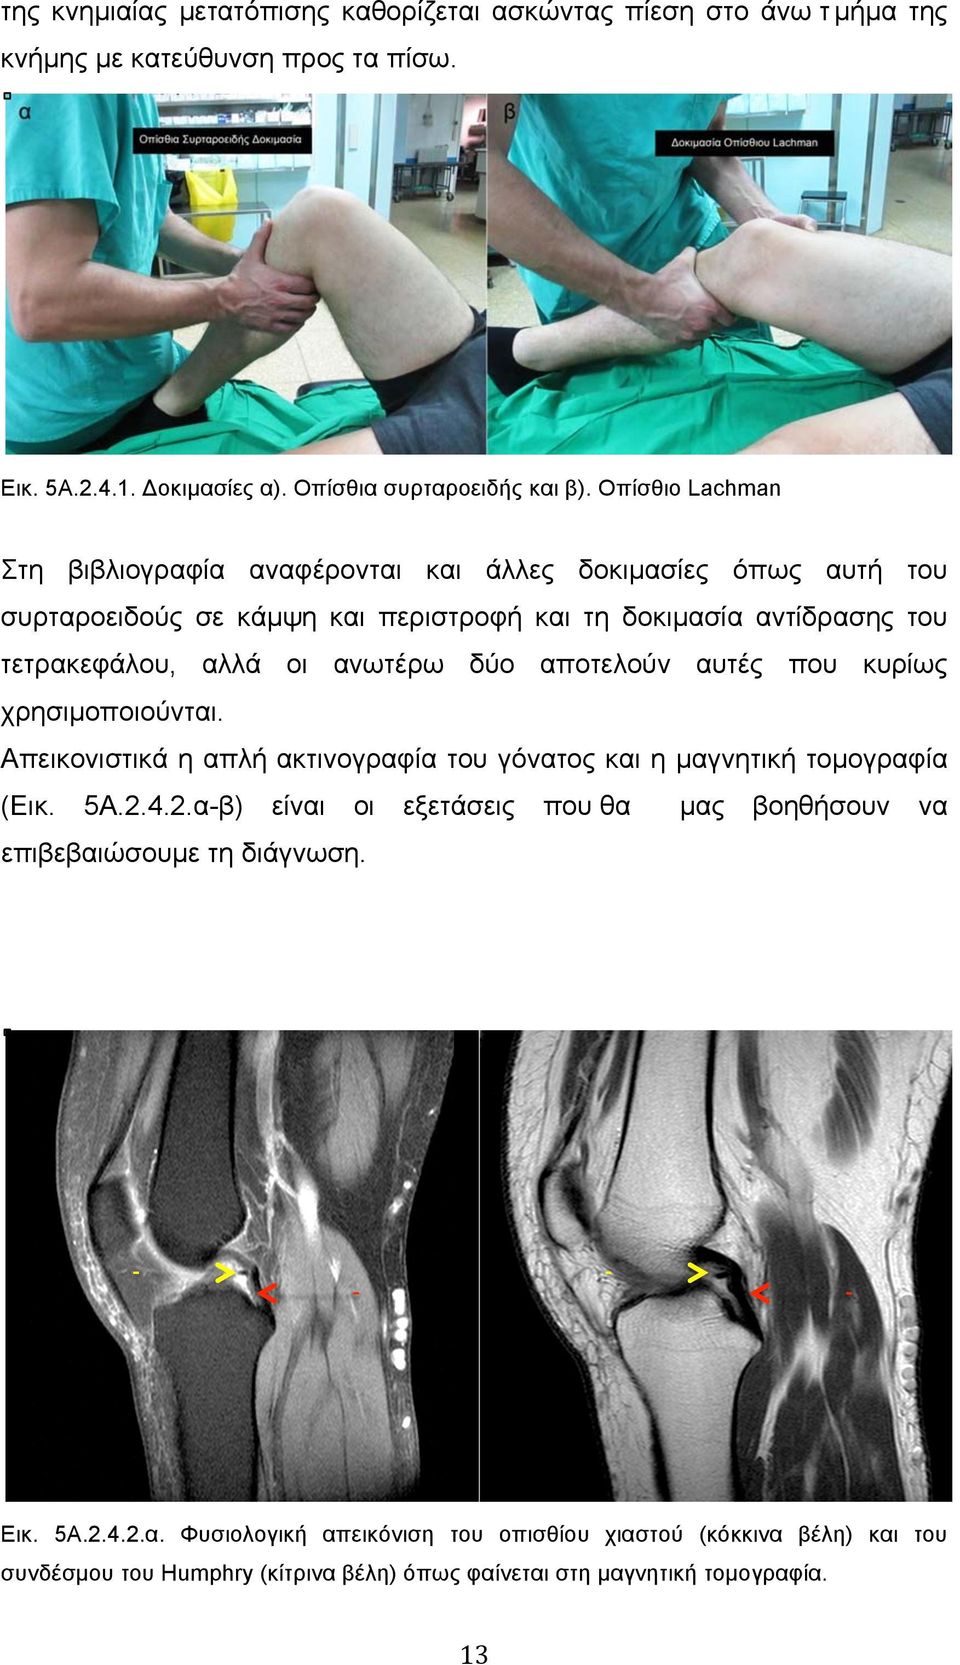 δύο αποτελούν αυτές που κυρίως χρησιµοποιούνται. Απεικονιστικά η απλή ακτινογραφία του γόνατος και η µαγνητική τοµογραφία (Εικ. 5Α.2.